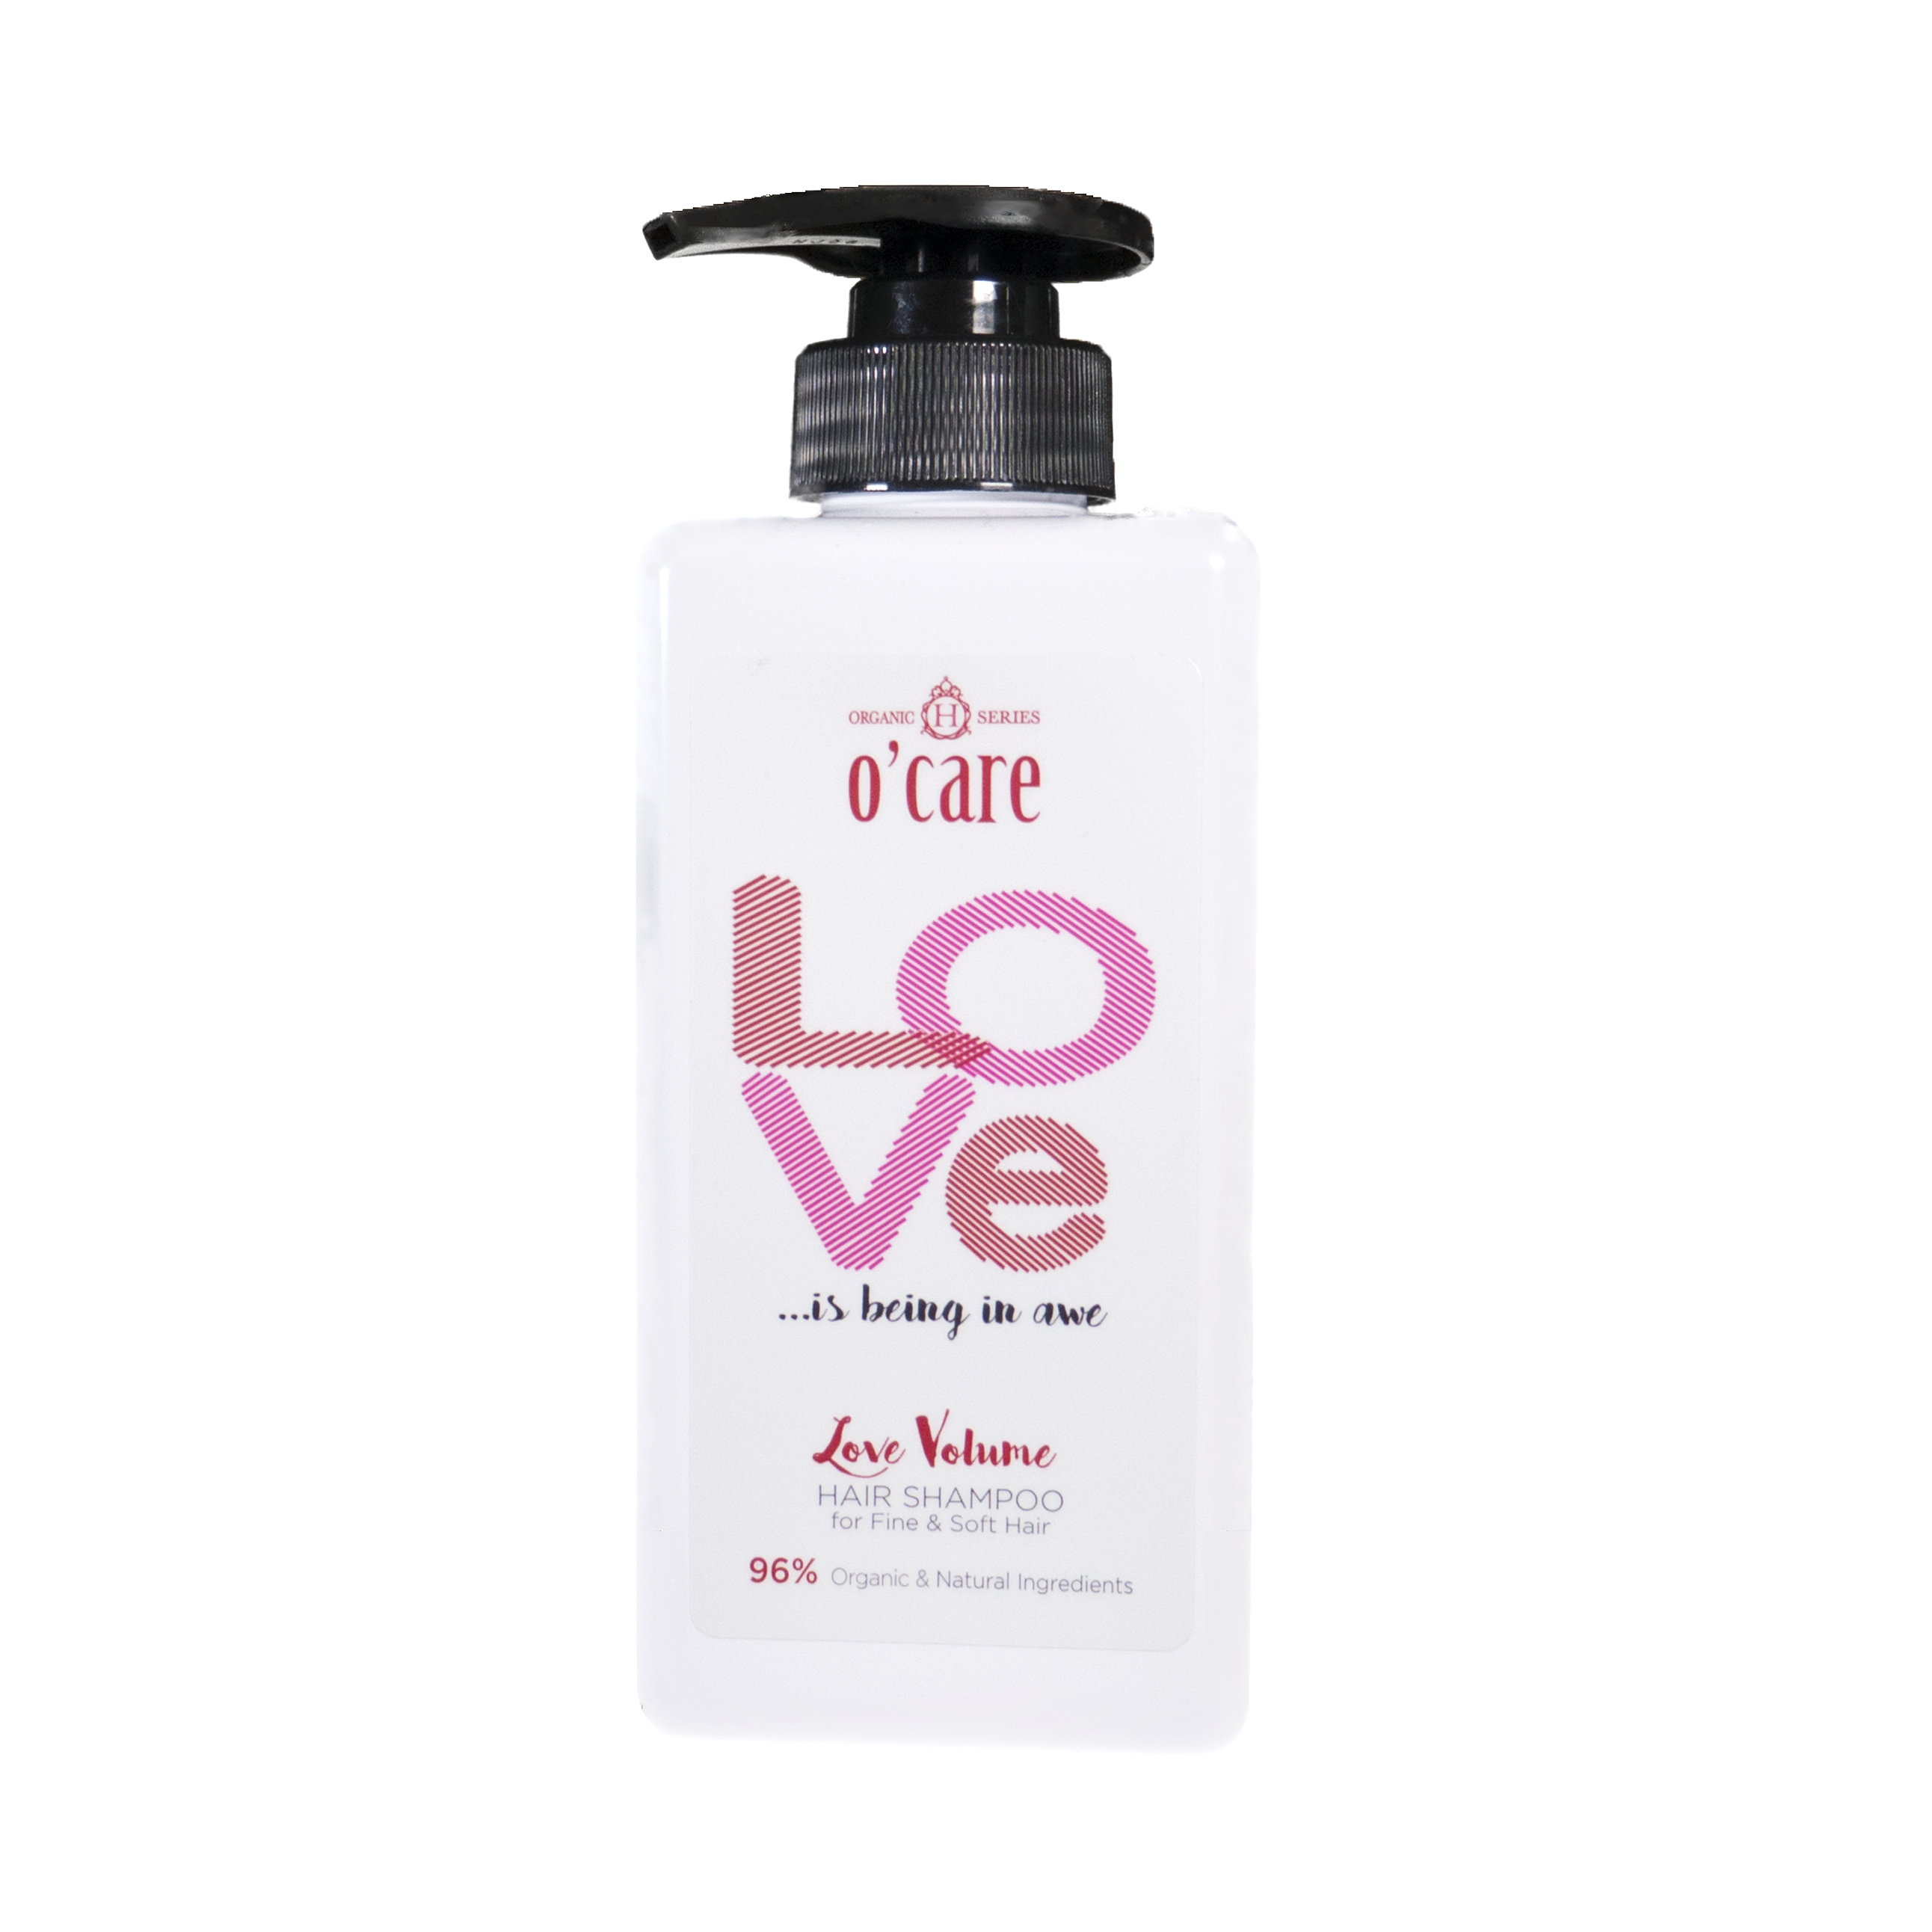 Love Volume Hair Shampoo